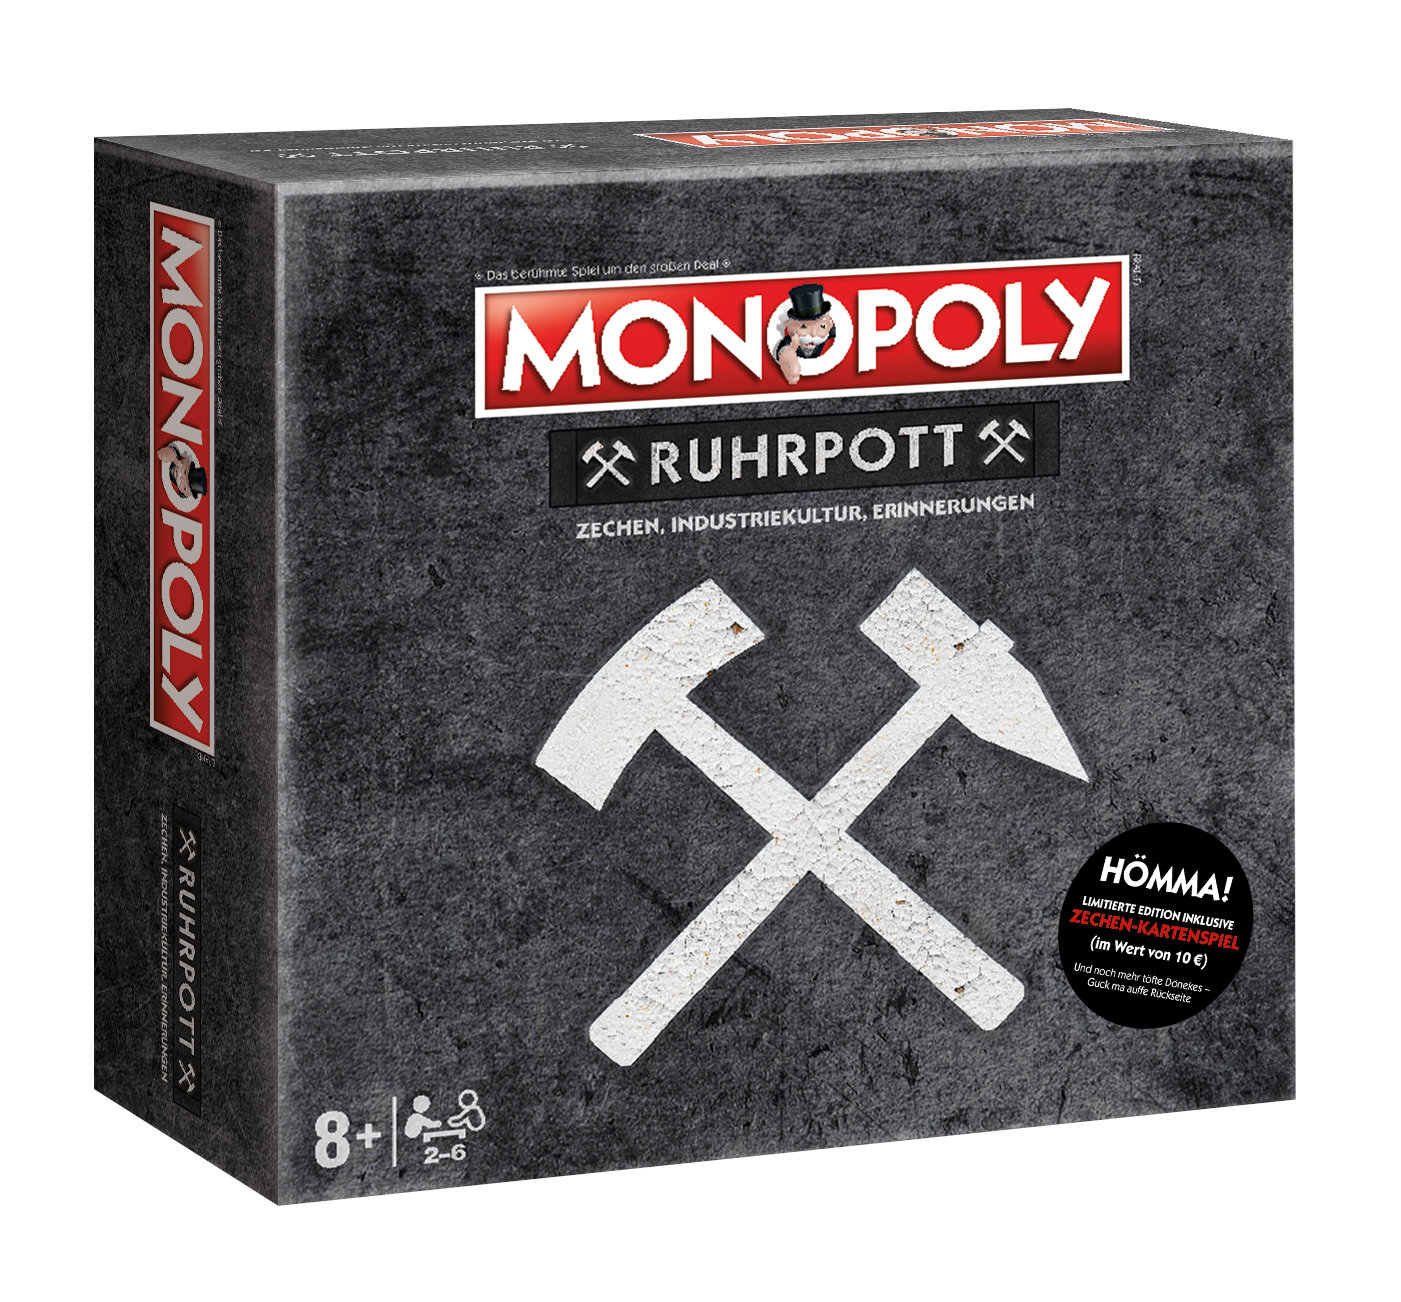 Monopoly Städteedition - Ruhrpott inkl. Top Trumps Zechen